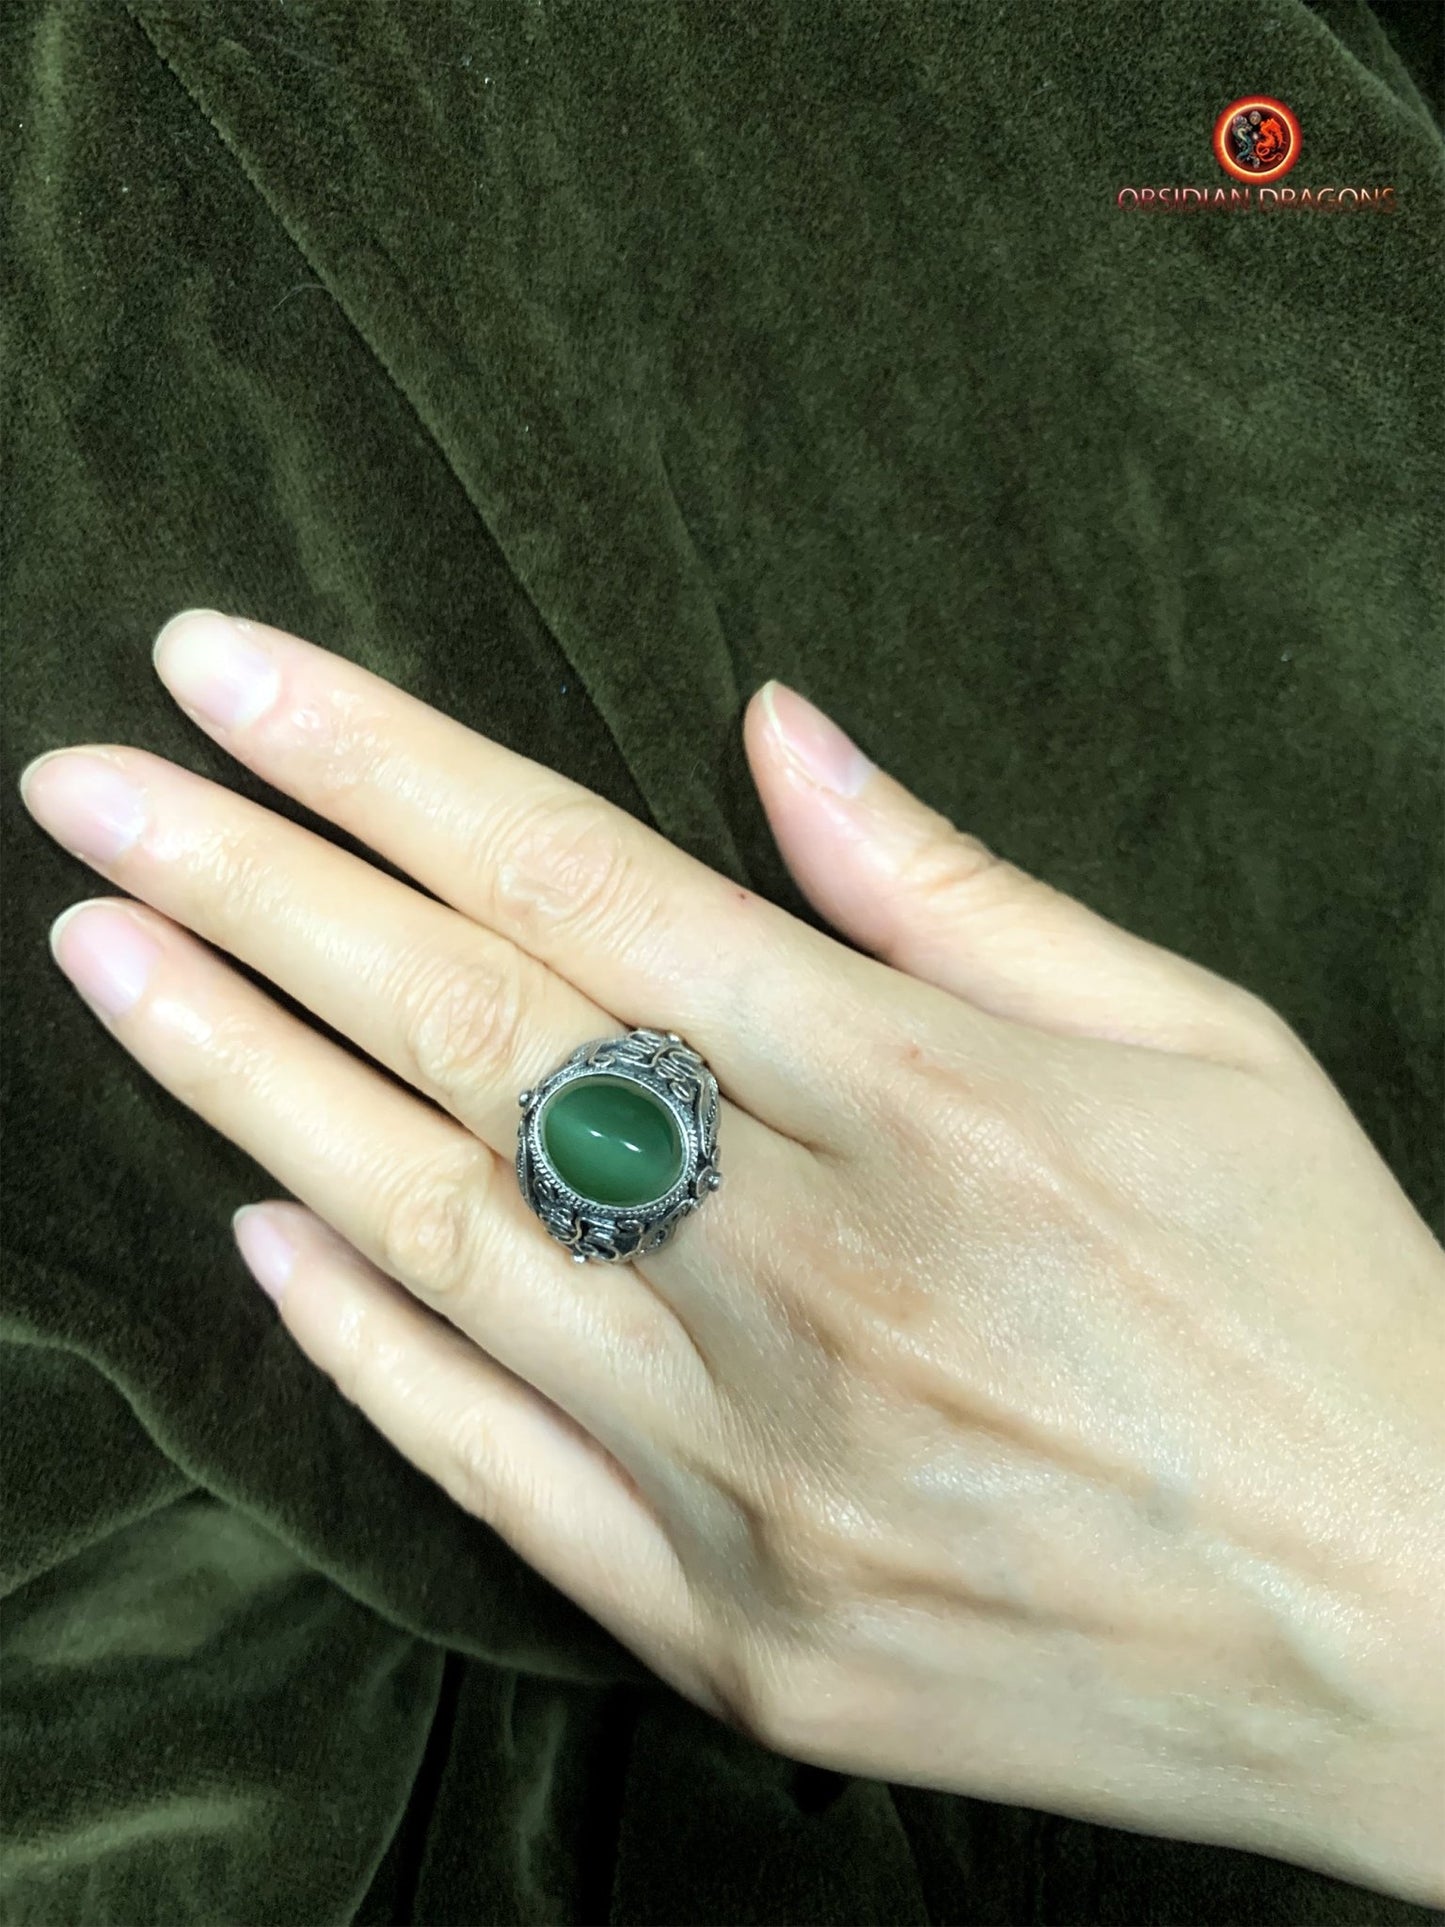 Bague en jade "oeil de chat"- Argent filigrané- Unique | obsidian dragons